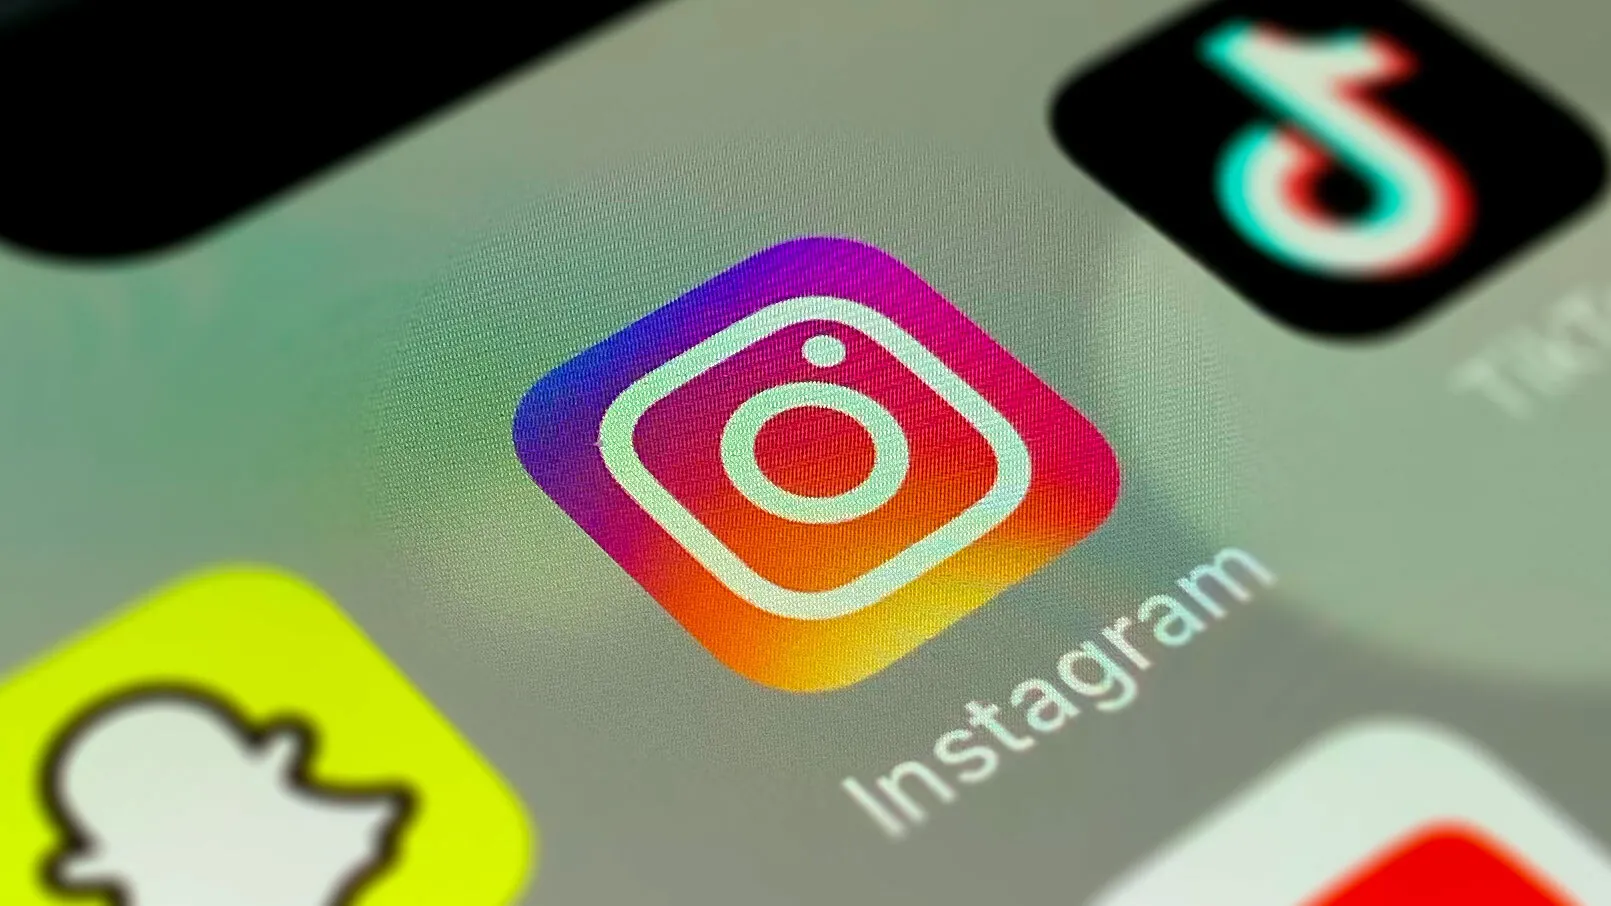 Instagram розробляє налаштовуваних "ШІ-друзів" - персоналізованих чат-ботів для спілкування